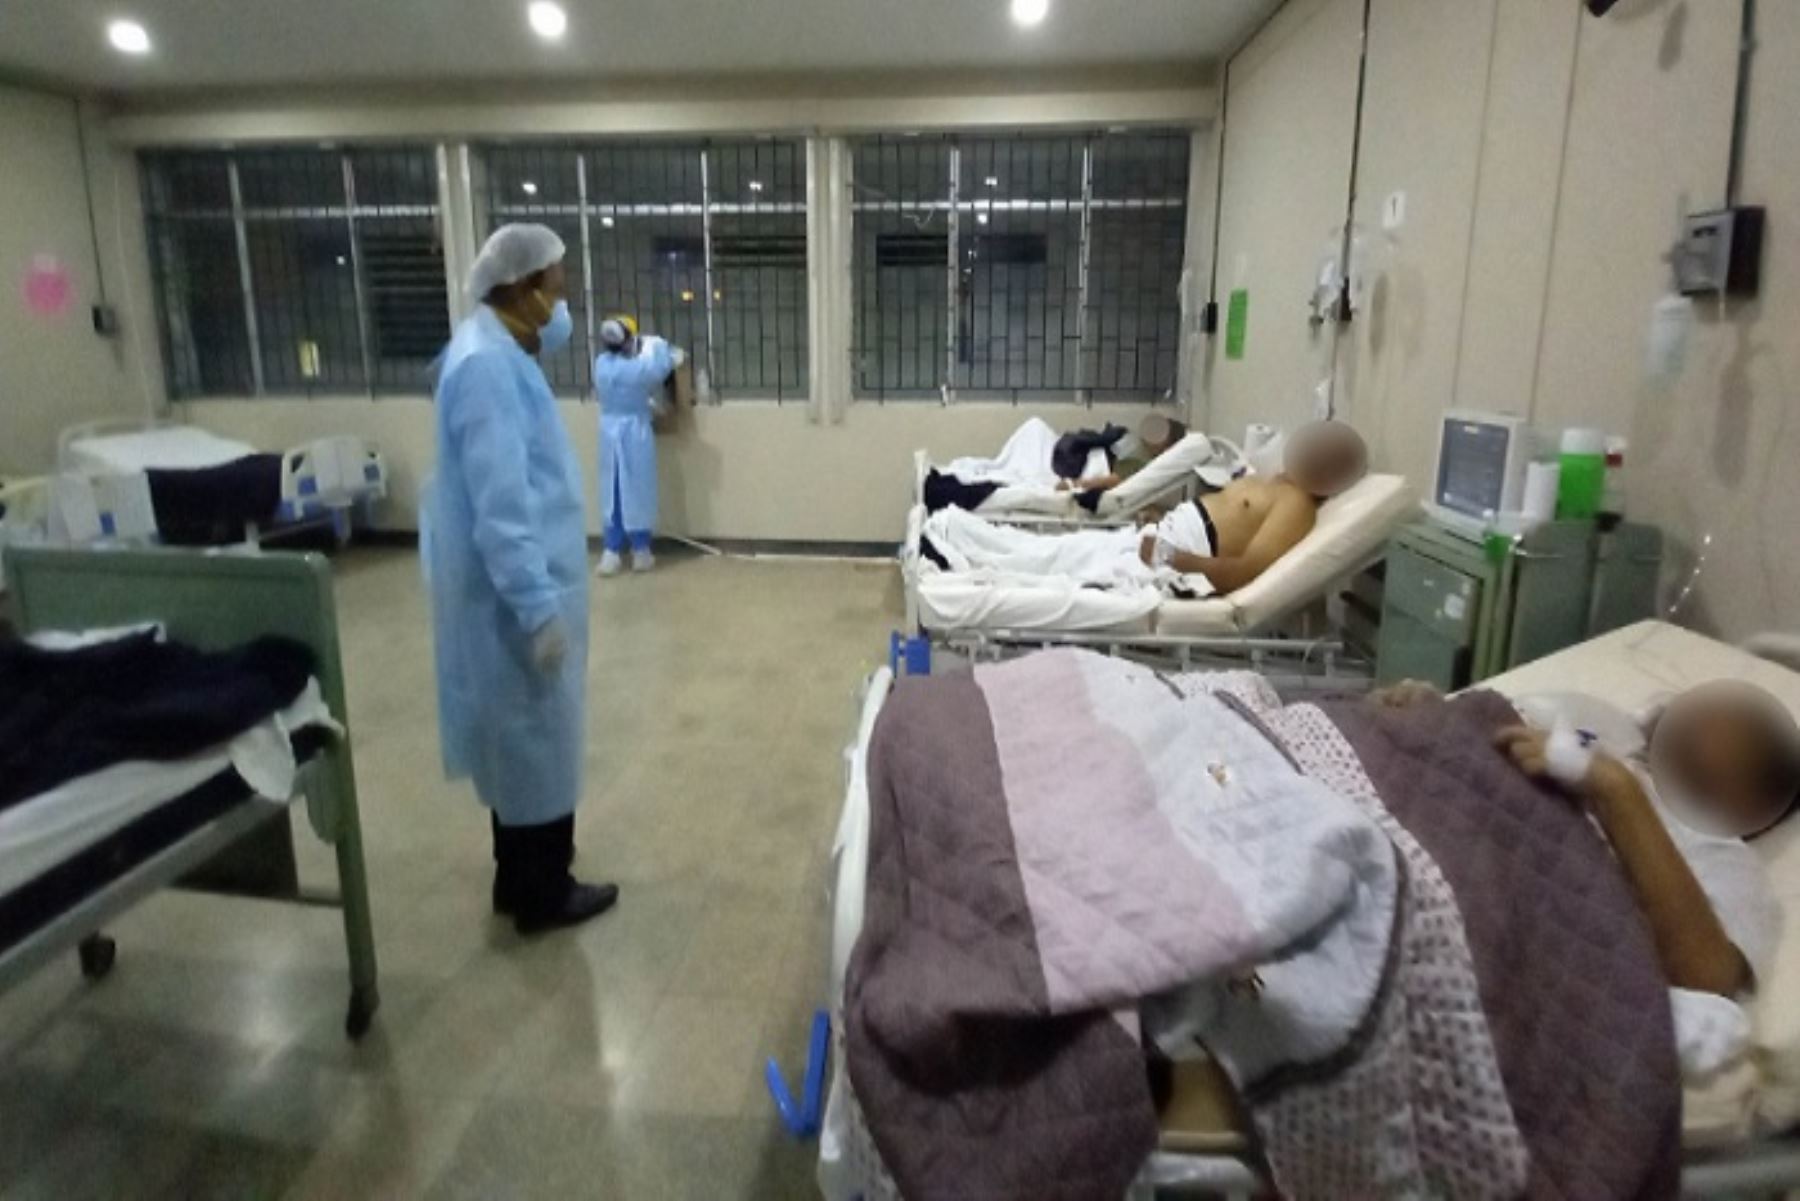 De los 10 pacientes reportados, 7 fueron tratados de manera ambulatoria y 2 necesitaron hospitalización, pero y actualmente solo una persona se mantiene internada en el hospital de Chimbote.